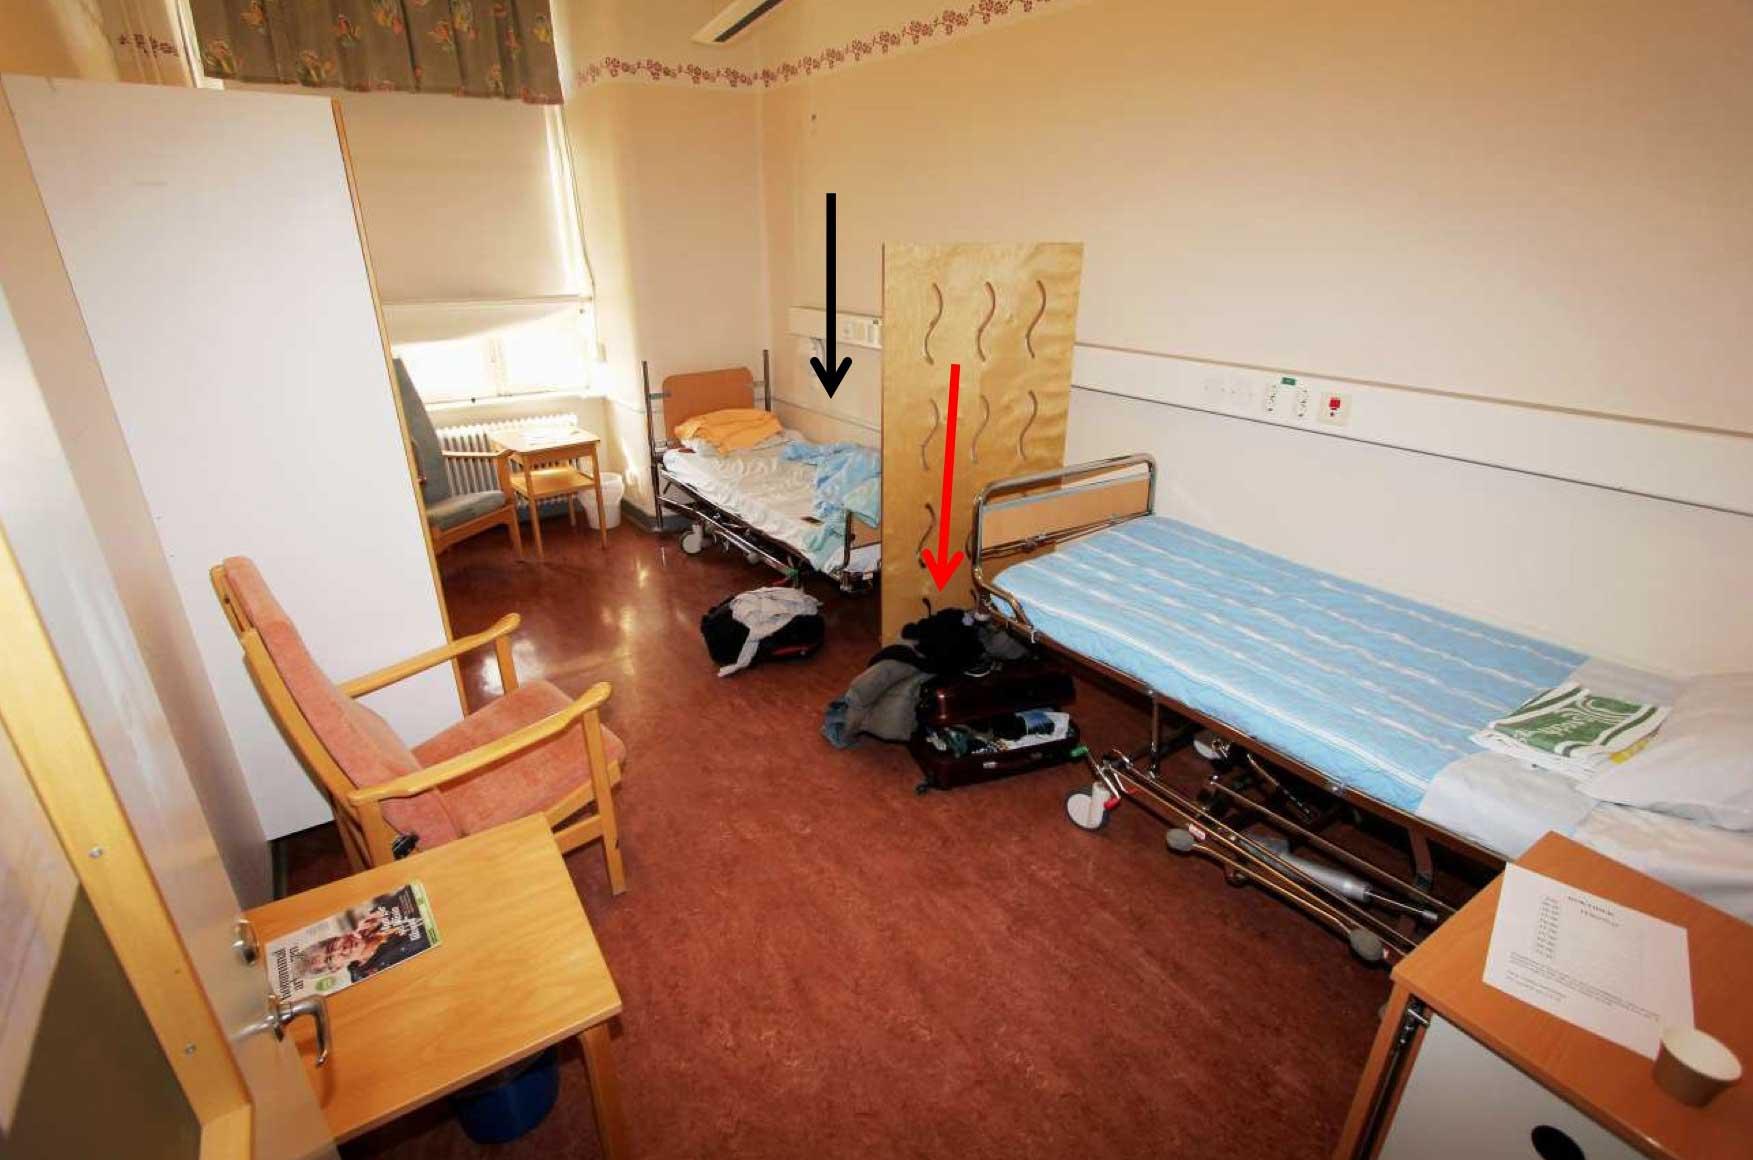 En man försökte strypa en annan patient på en psykiatrisk akutvårdsavdelning vid Sankt Görans sjukhus i Stockholm. Bilden visar den misstänktes rum. Svart pil markerar hans säng, röd pil markerar hans ryggsäck. Bilden kommer från polisens förundersökning.